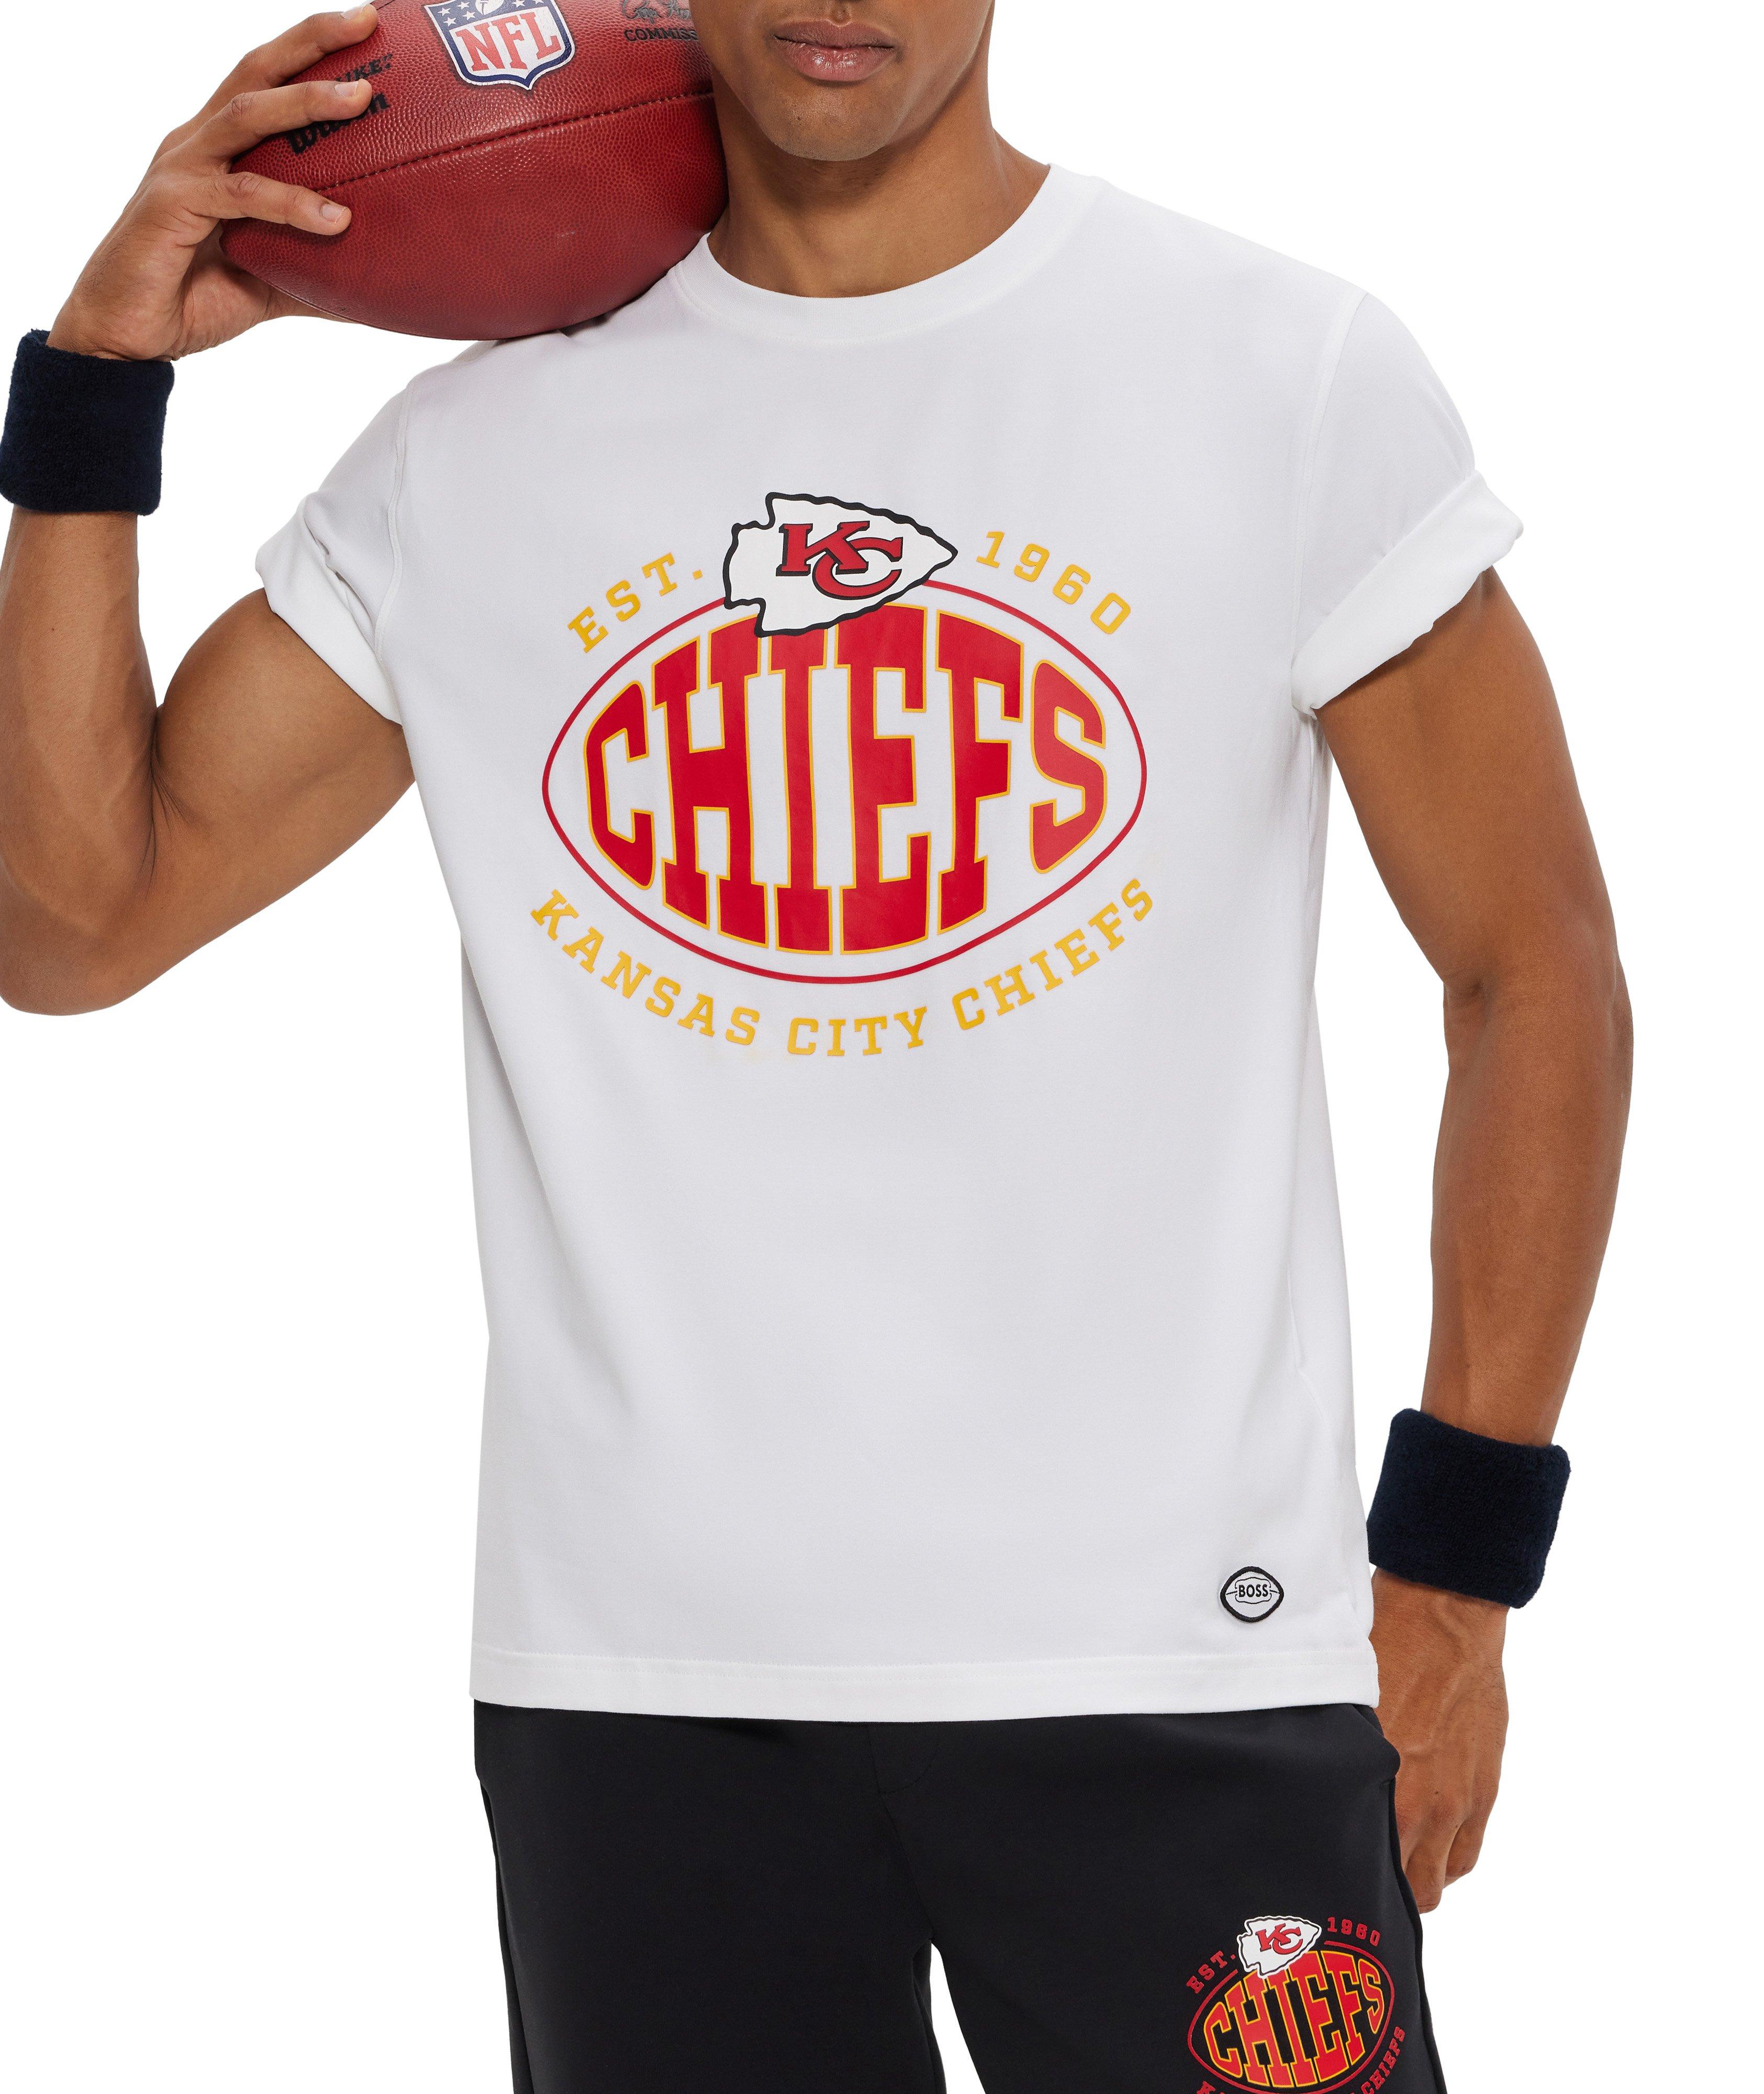 T-shirt en coton extensible, collection NFL image 3